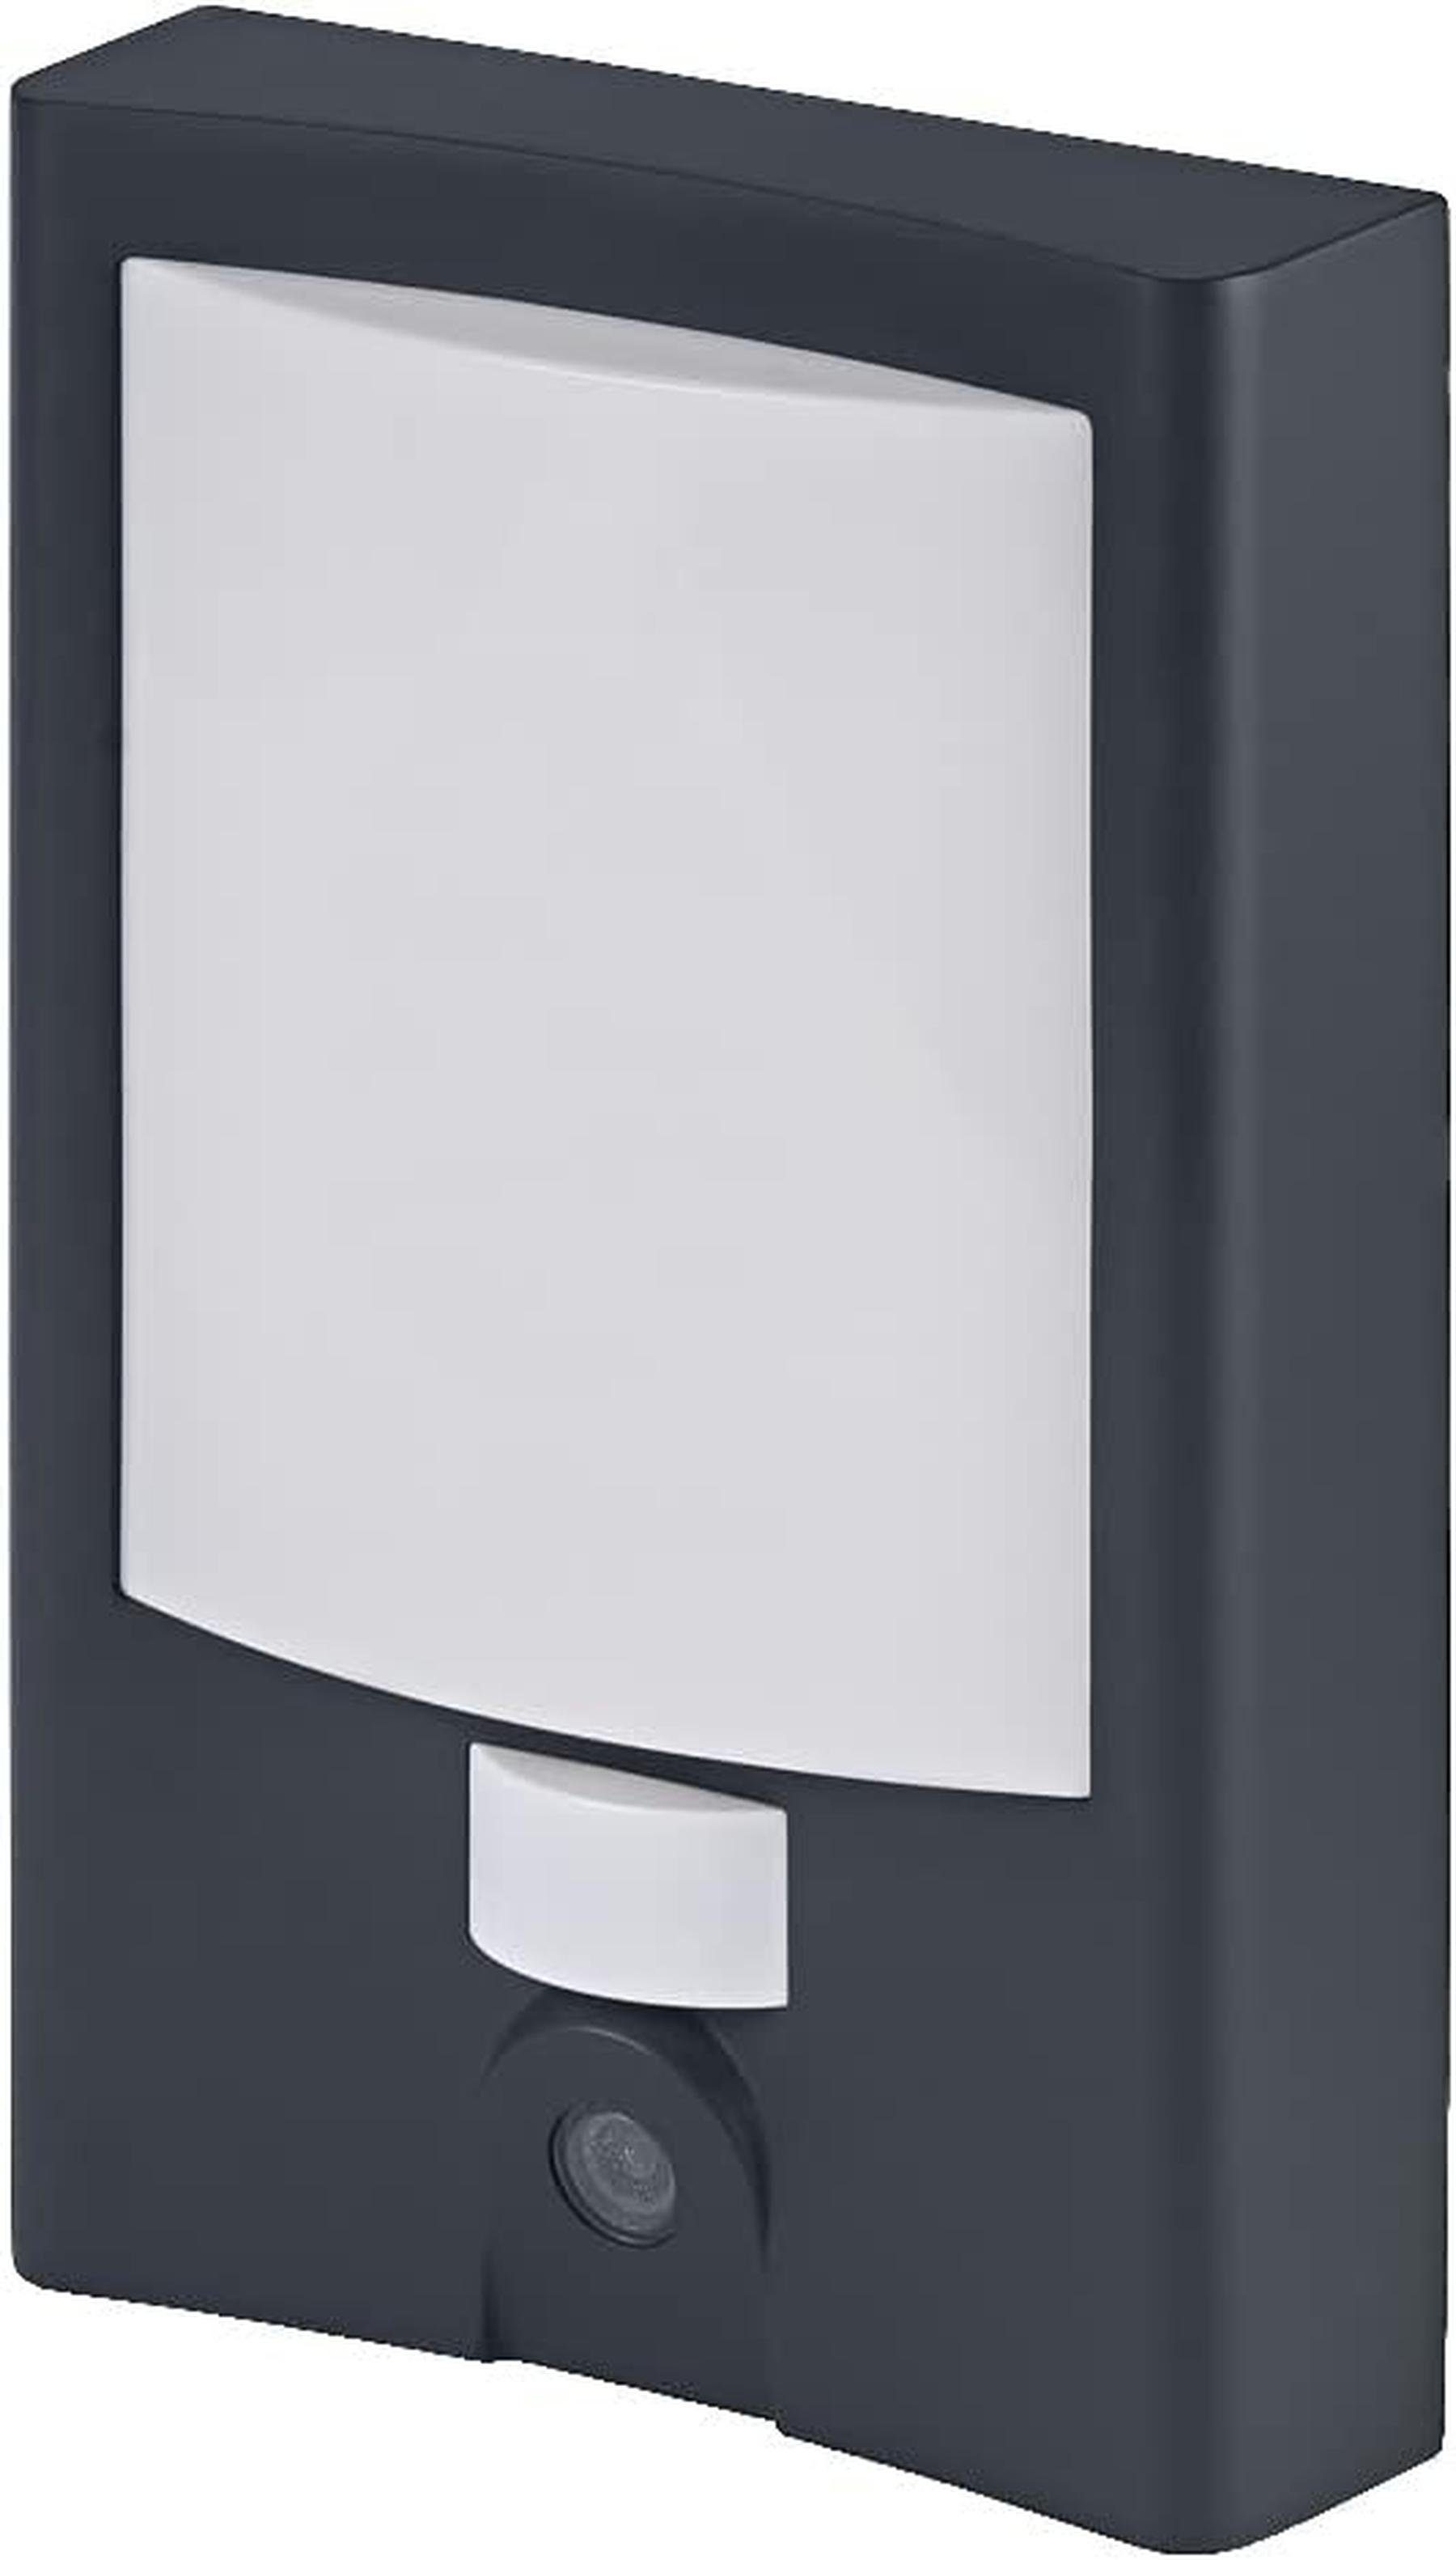 Outdoor Licht SMART+ smarte Hausnummer LEDVANCE (3000 WIFI-Technolo K) warmweißes Ledvance